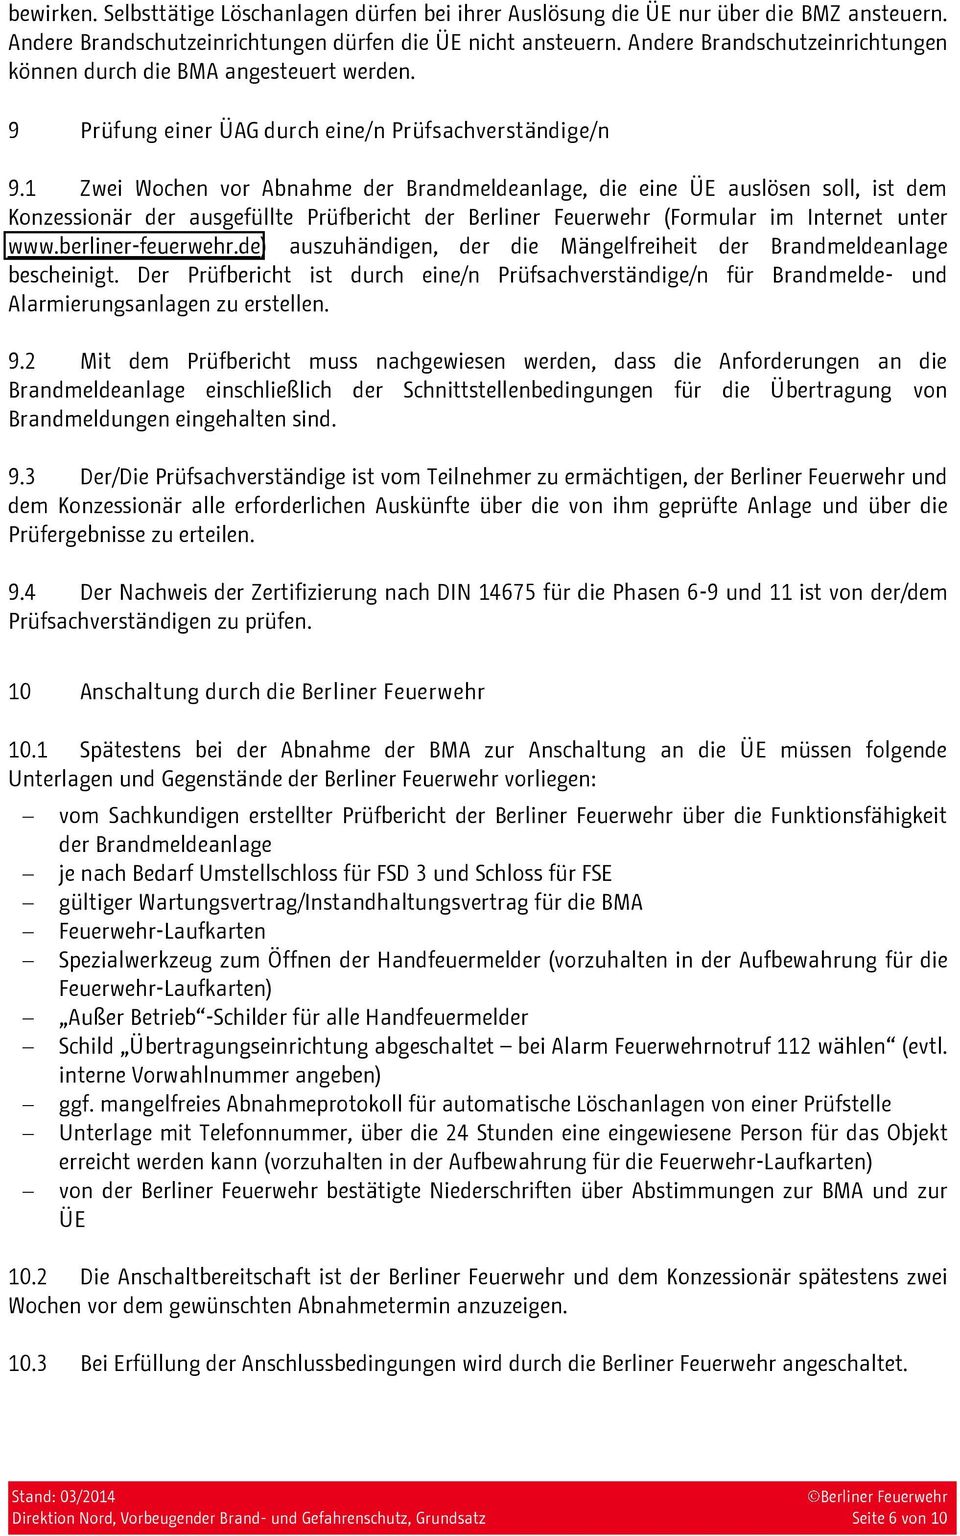 1 Zwei Wochen vor Abnahme der Brandmeldeanlage, die eine ÜE auslösen soll, ist dem Konzessionär der ausgefüllte Prüfbericht der (Formular im Internet unter www.berliner-feuerwehr.